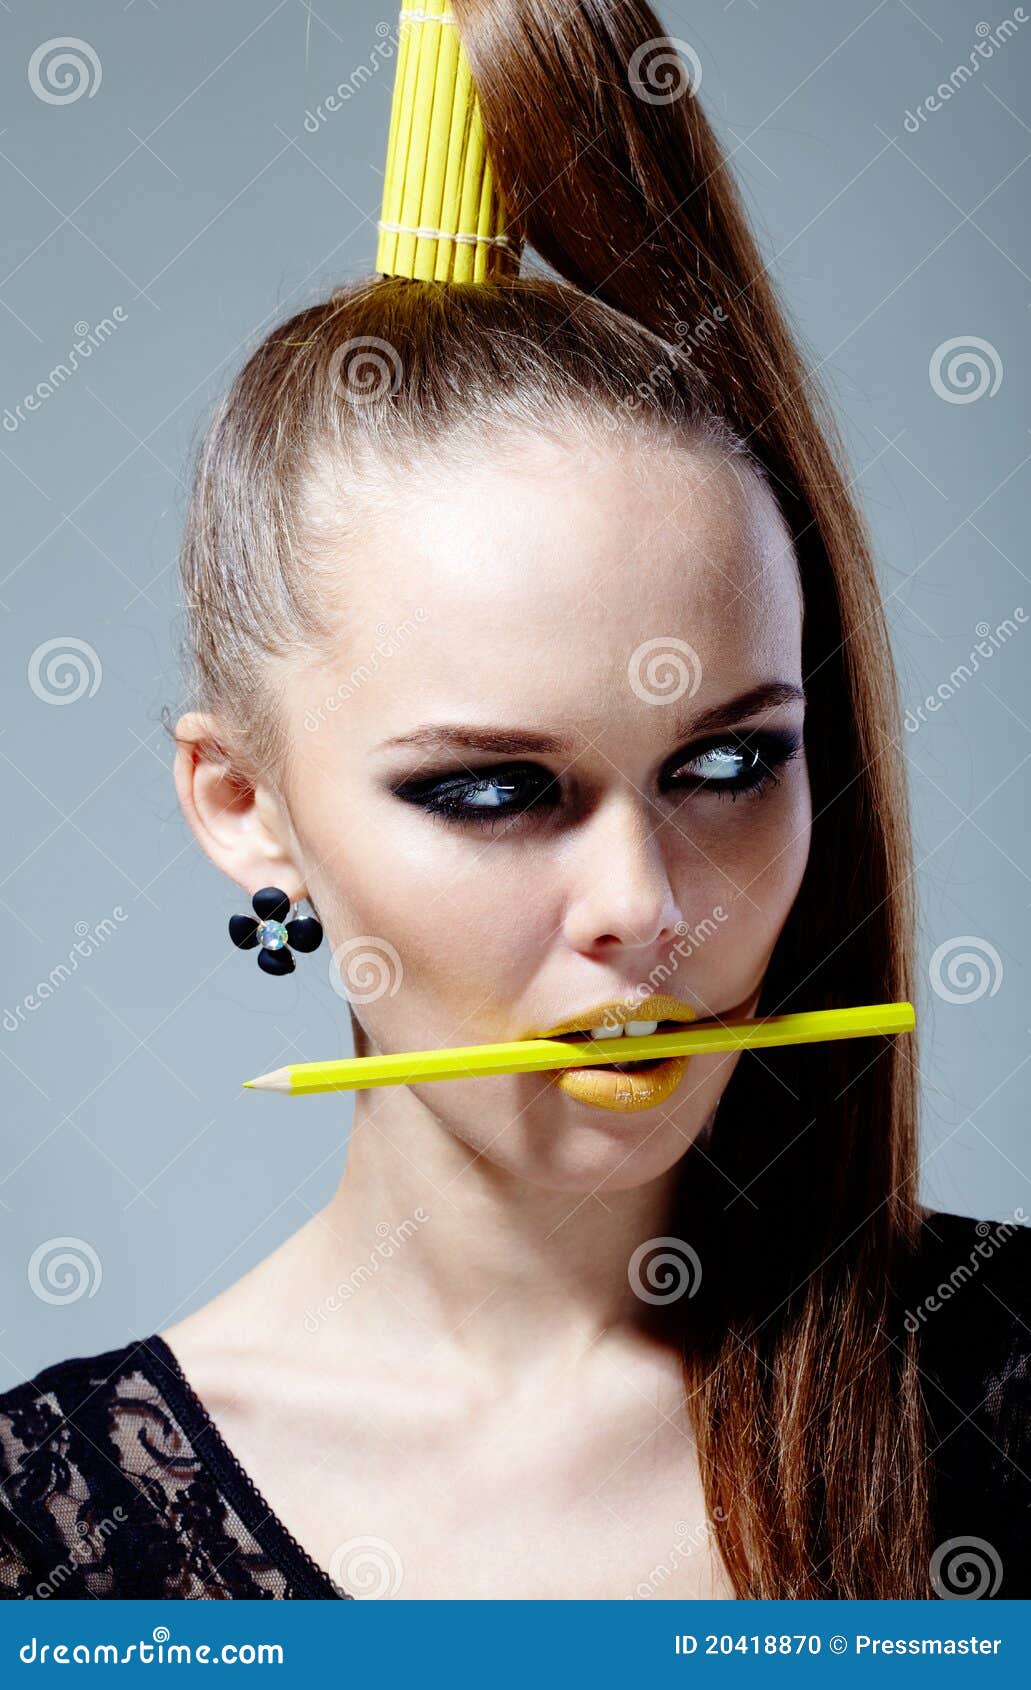 Gele manier. Portret van schitterende vrouw met potlood in mond die opzij eruit ziet